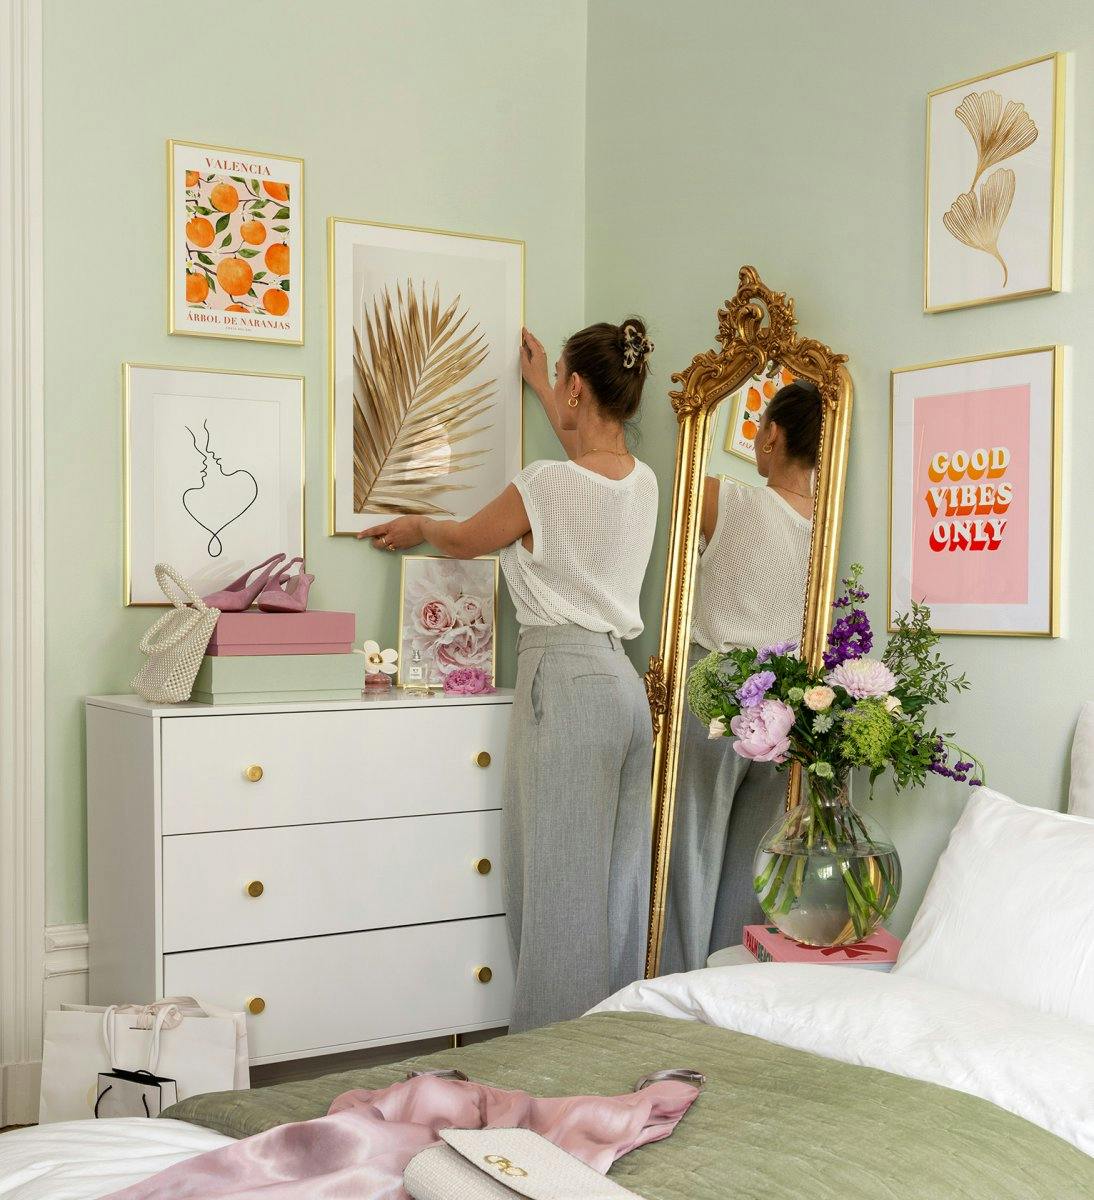 ピンク、オレンジ、金色のギャラリーの壁、寝室用の金色のフレーム